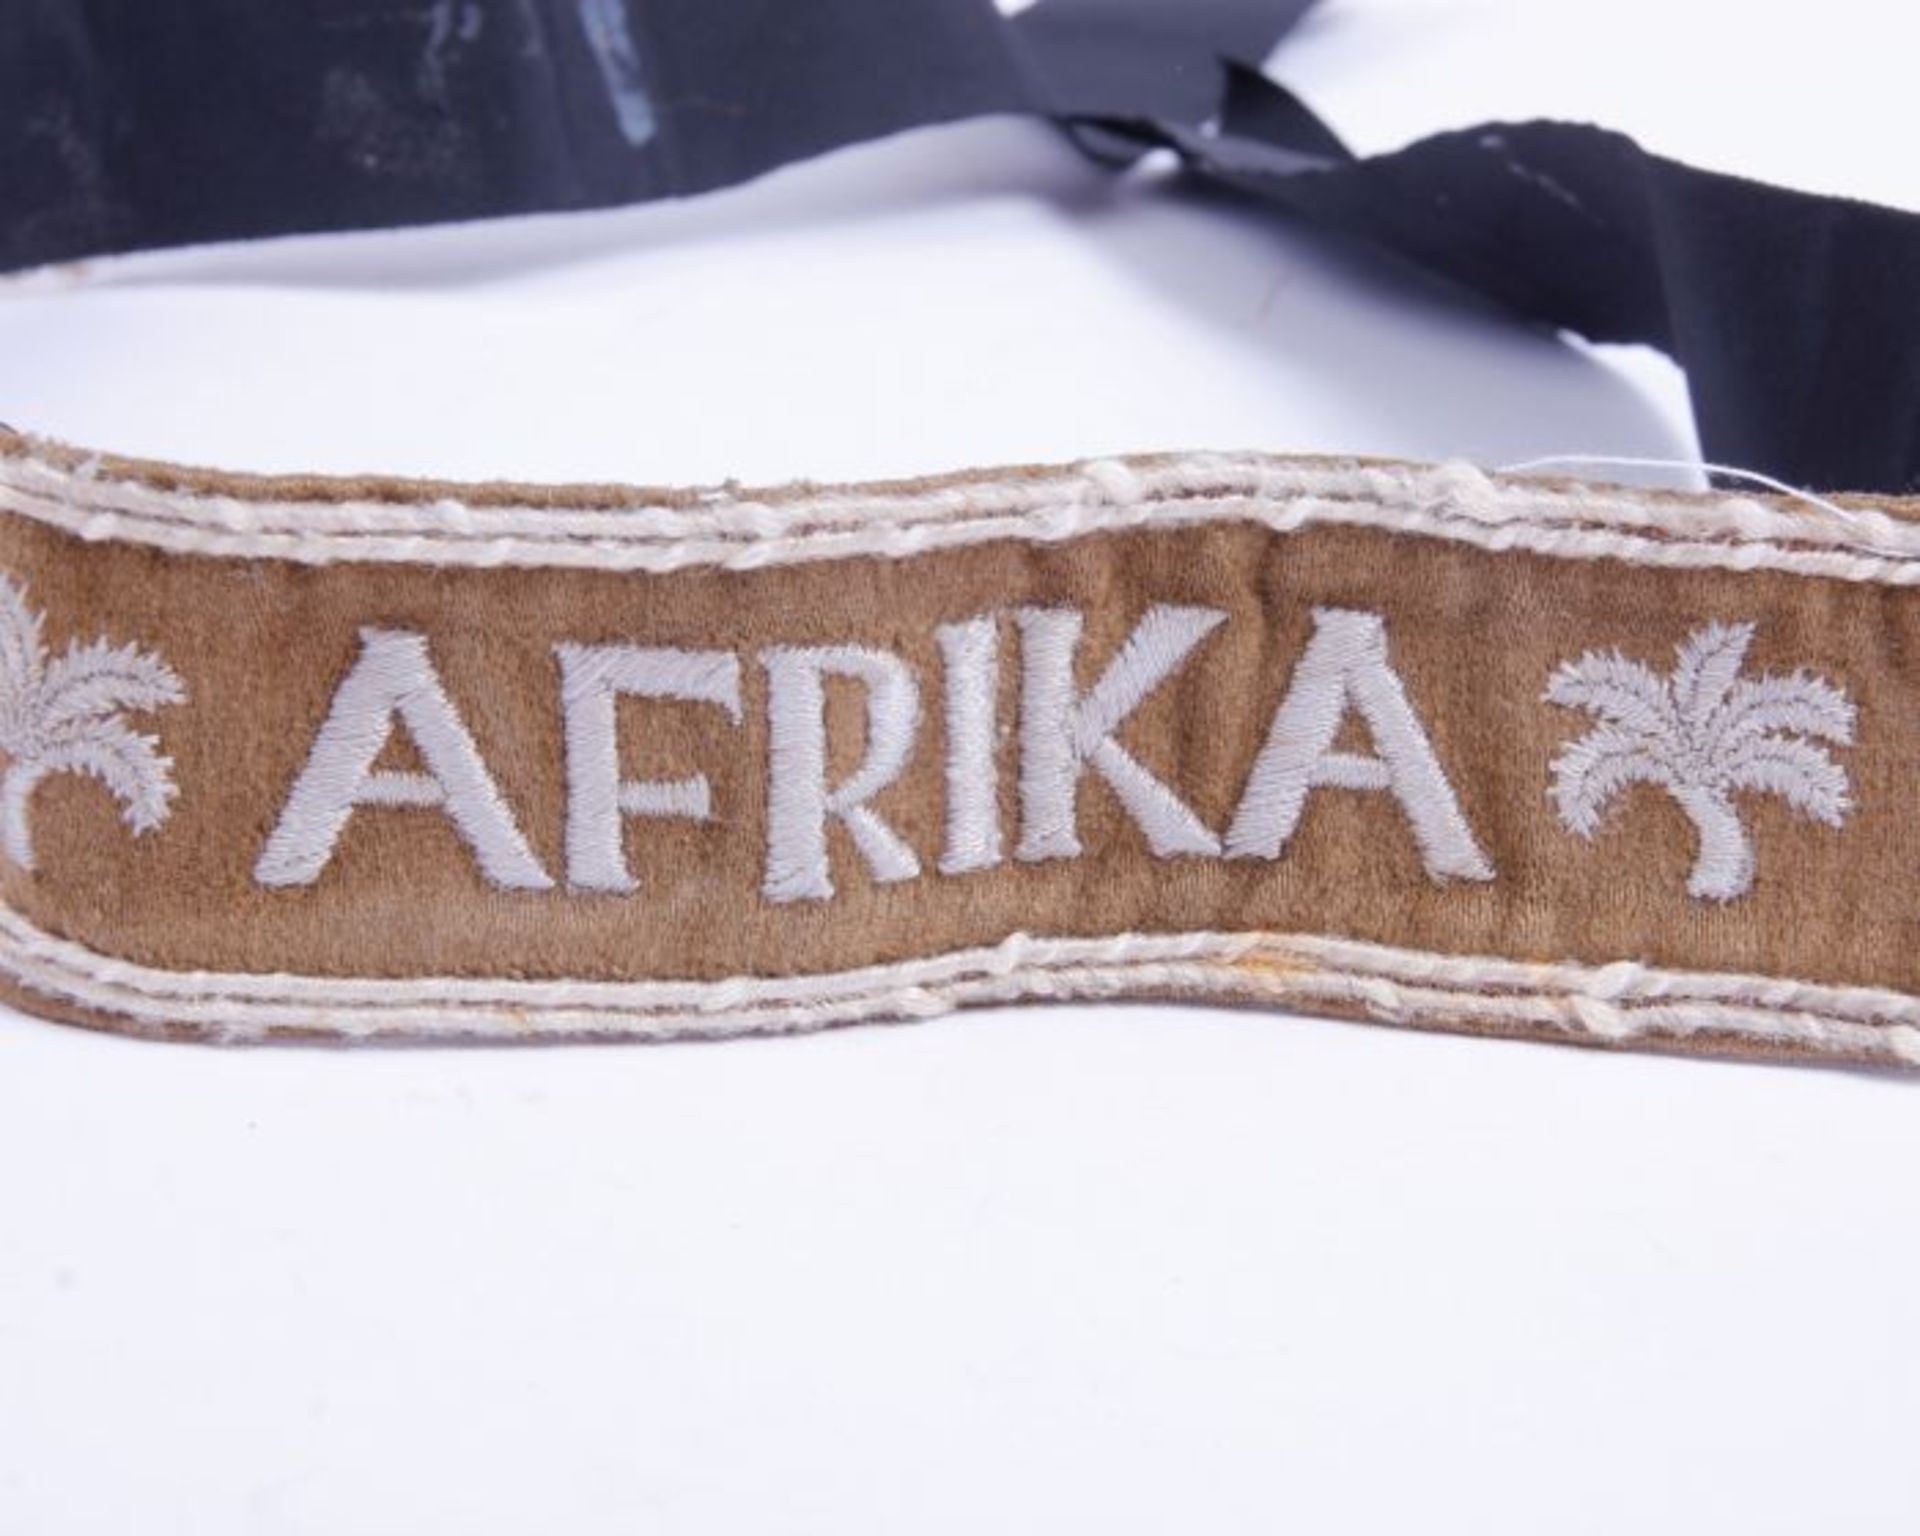 Ärmelband AfrikaÄrmelband Afrika auf Kamelhaar in der Standardausführung, aufgenäht auf ein - Bild 2 aus 3